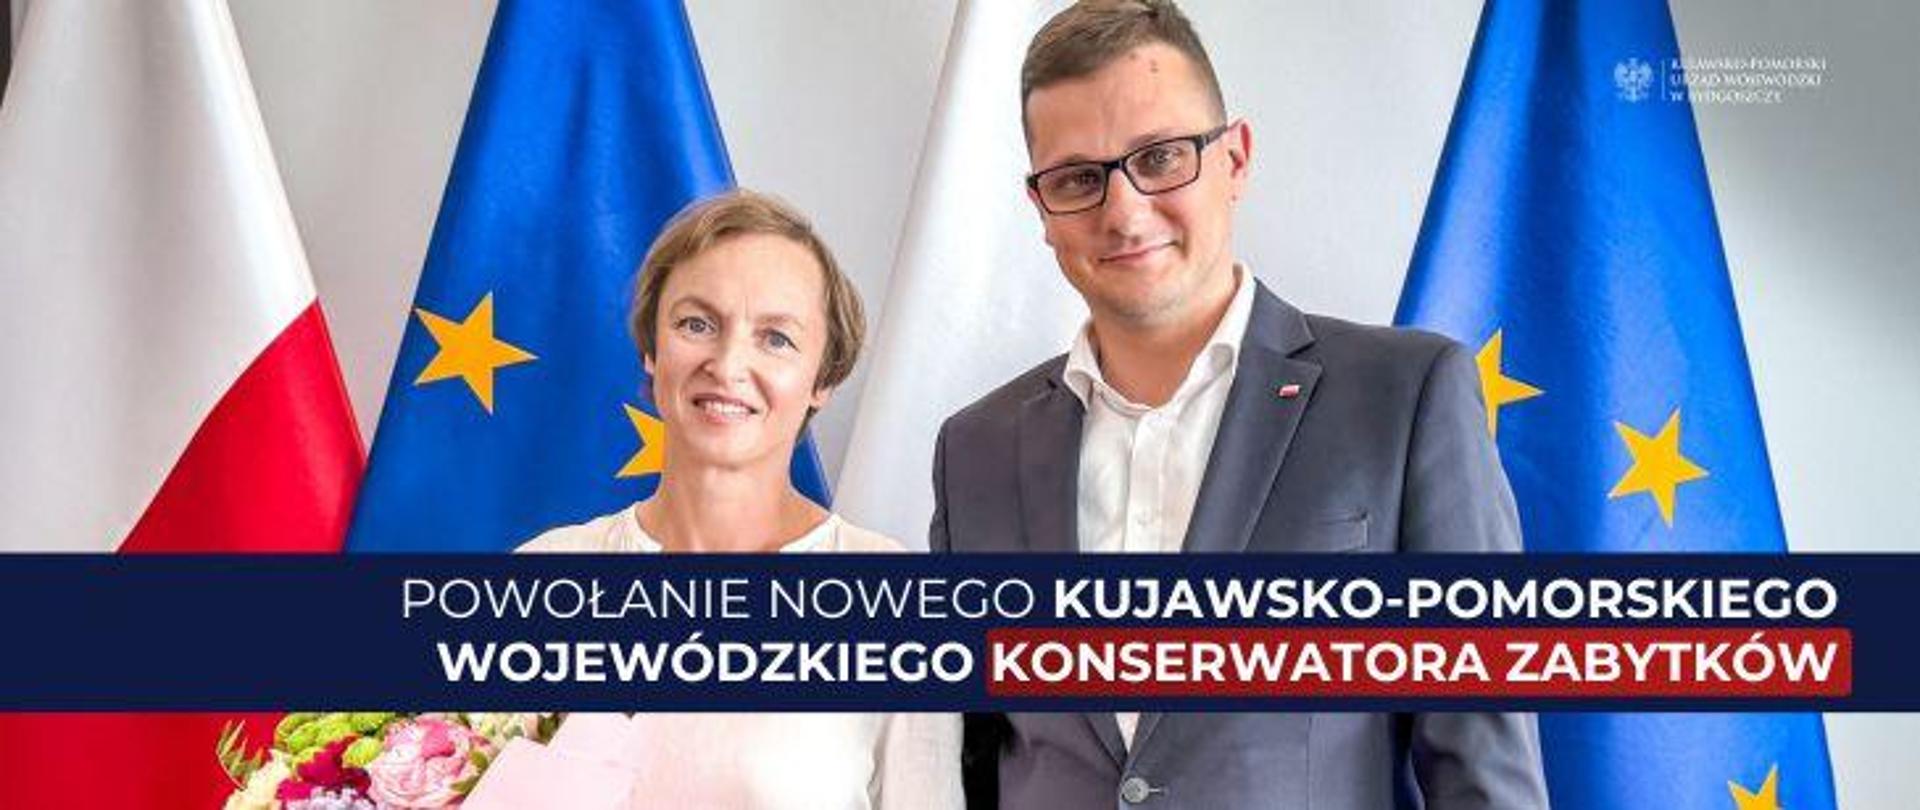 Powołanie nowego Wojewódzkiego Konserwatora Zabytków